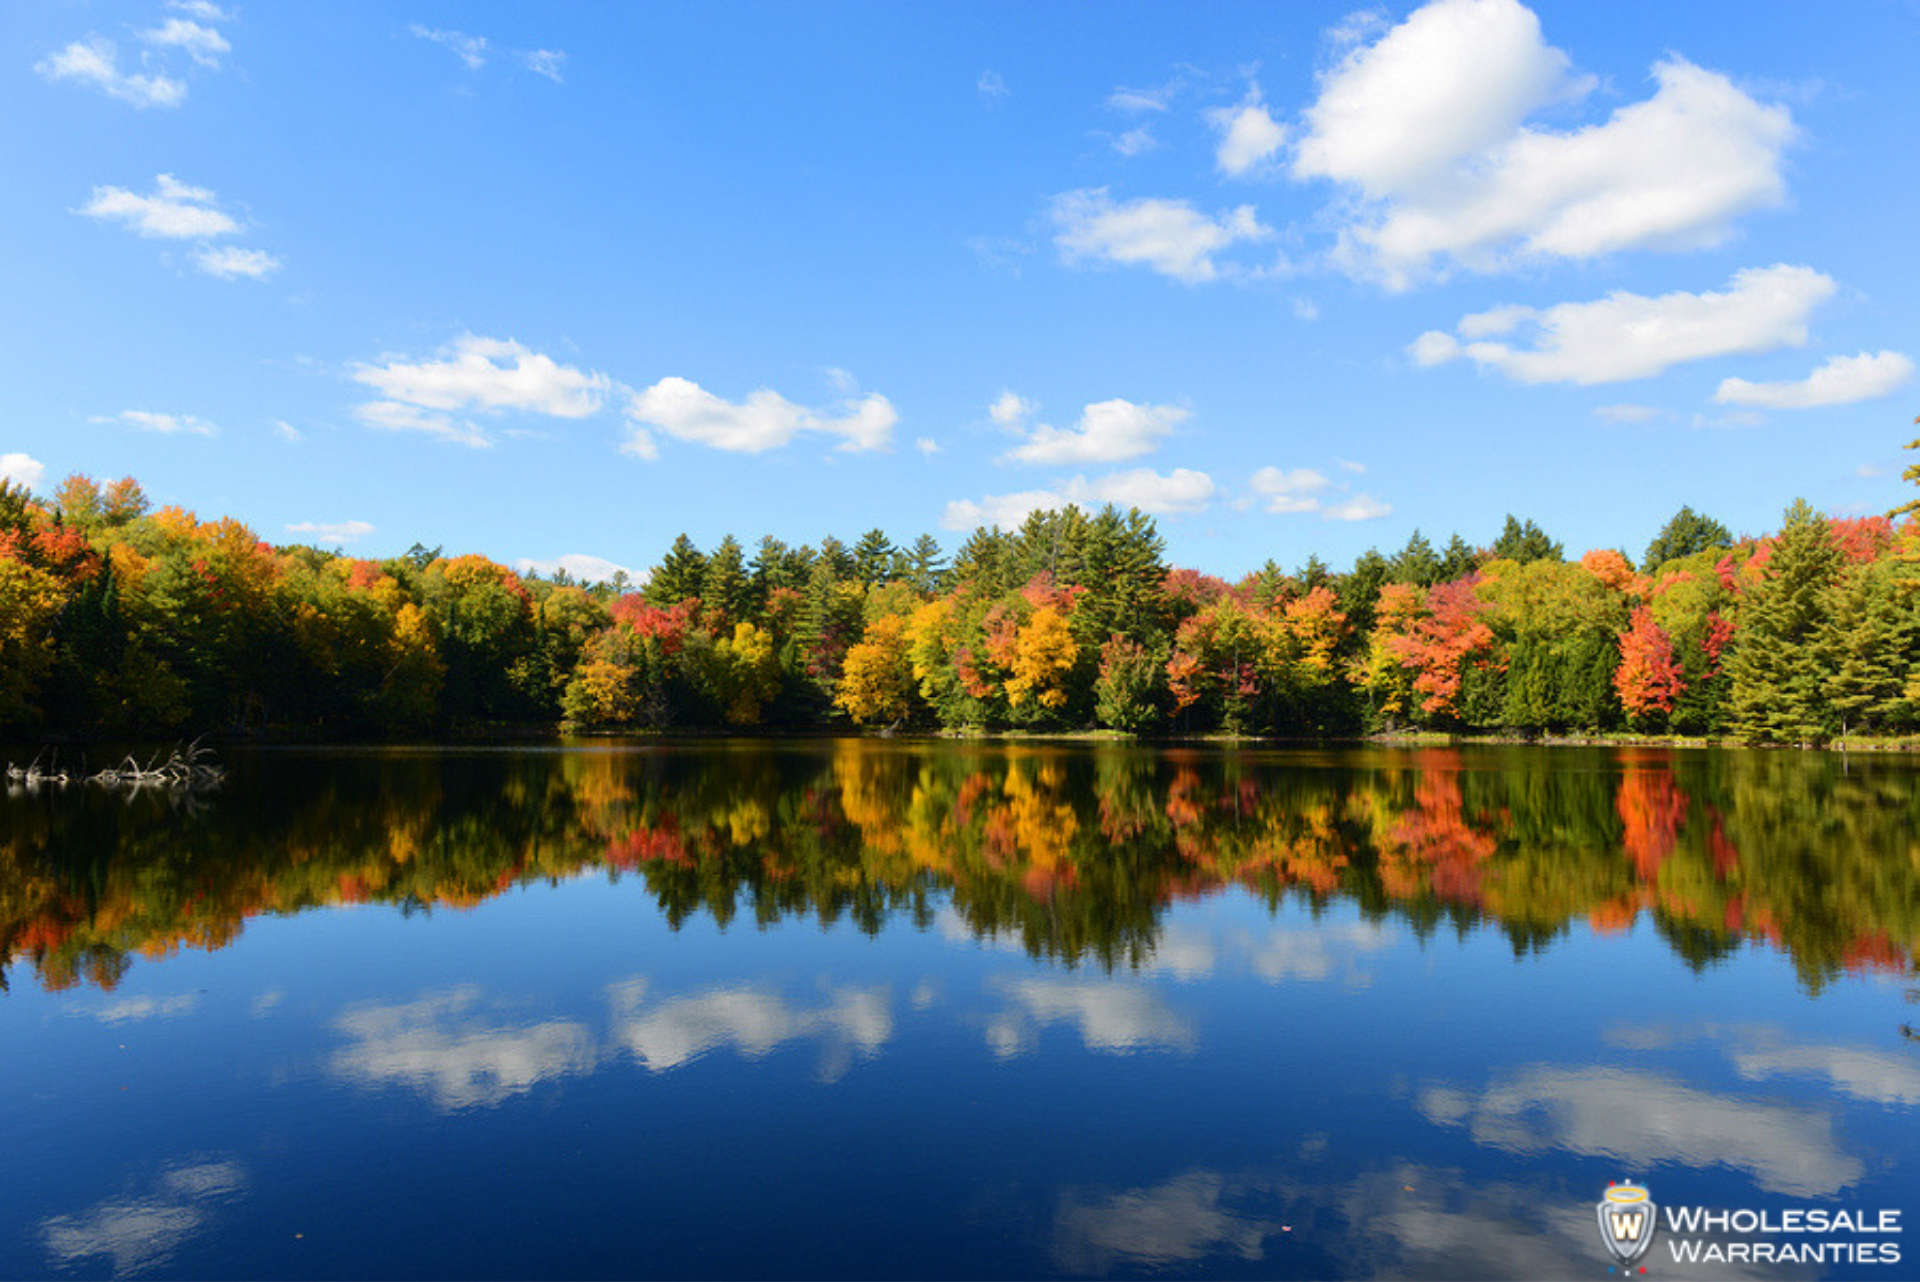 Fall foliage in Adirondacks